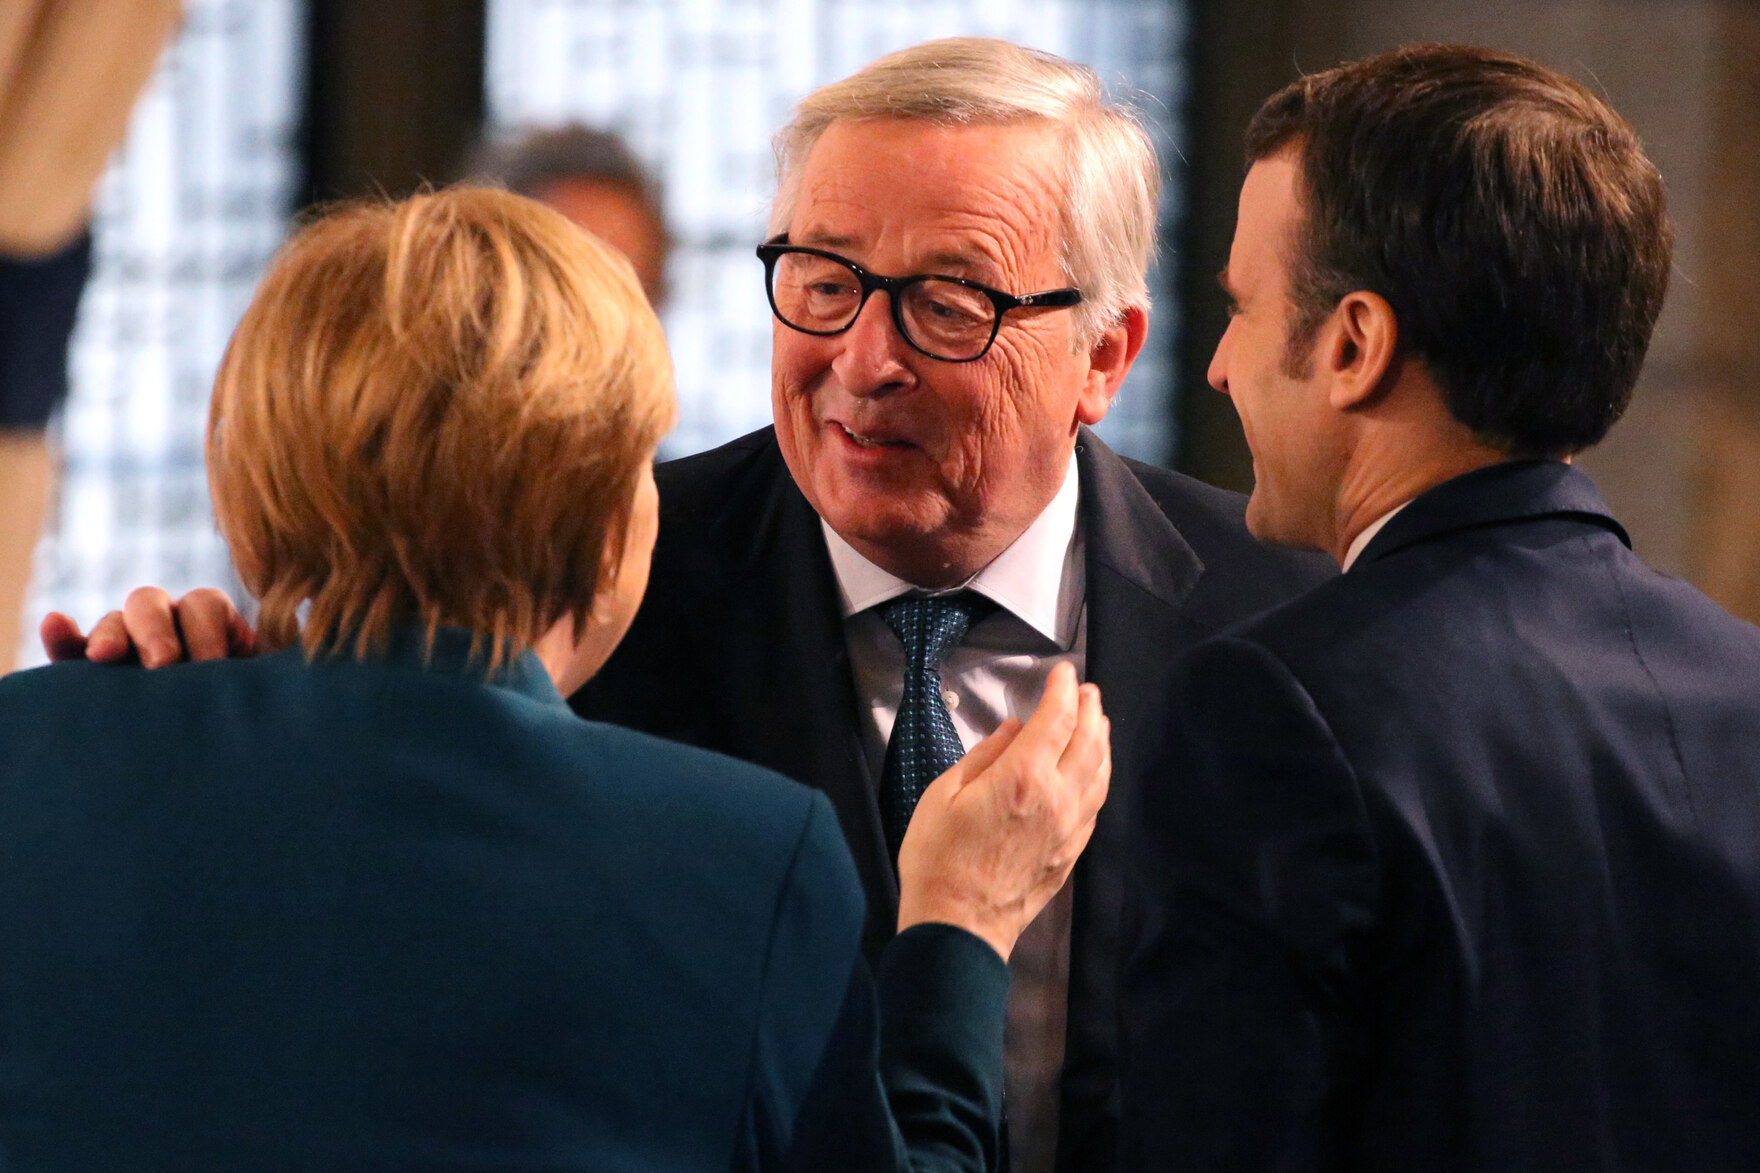 Drei Personen: Angela Merkel und Emmanuel Macron von hinten, Jean-Claude Juncker legt seine Hand auf die Schulter von Frau Merkel und spricht mit ihr.